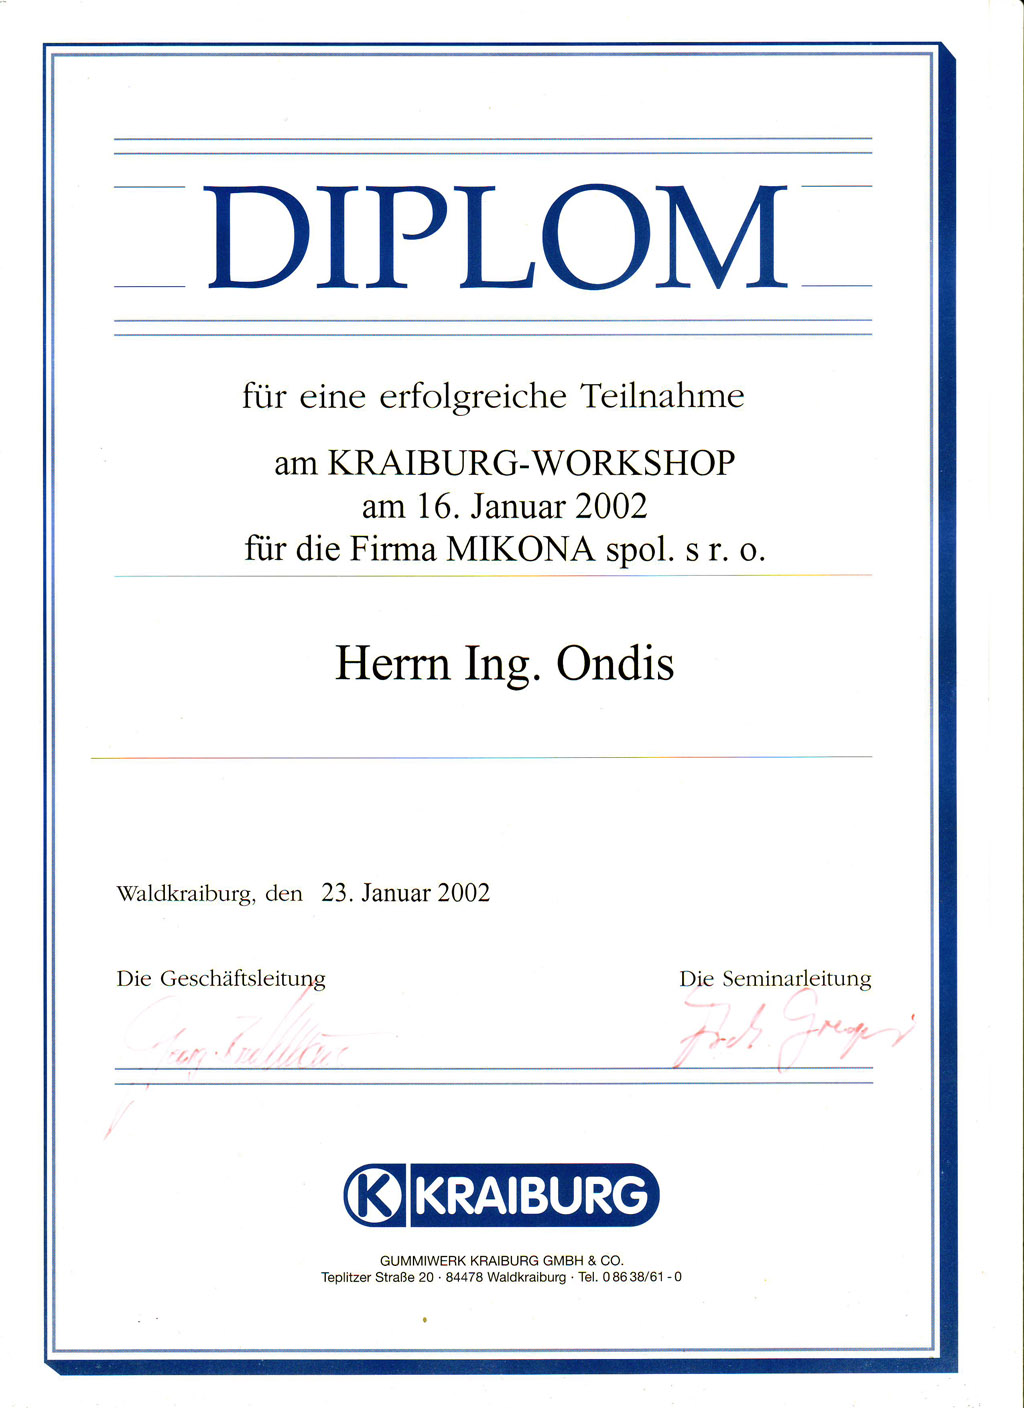 Diplom Kraiburg